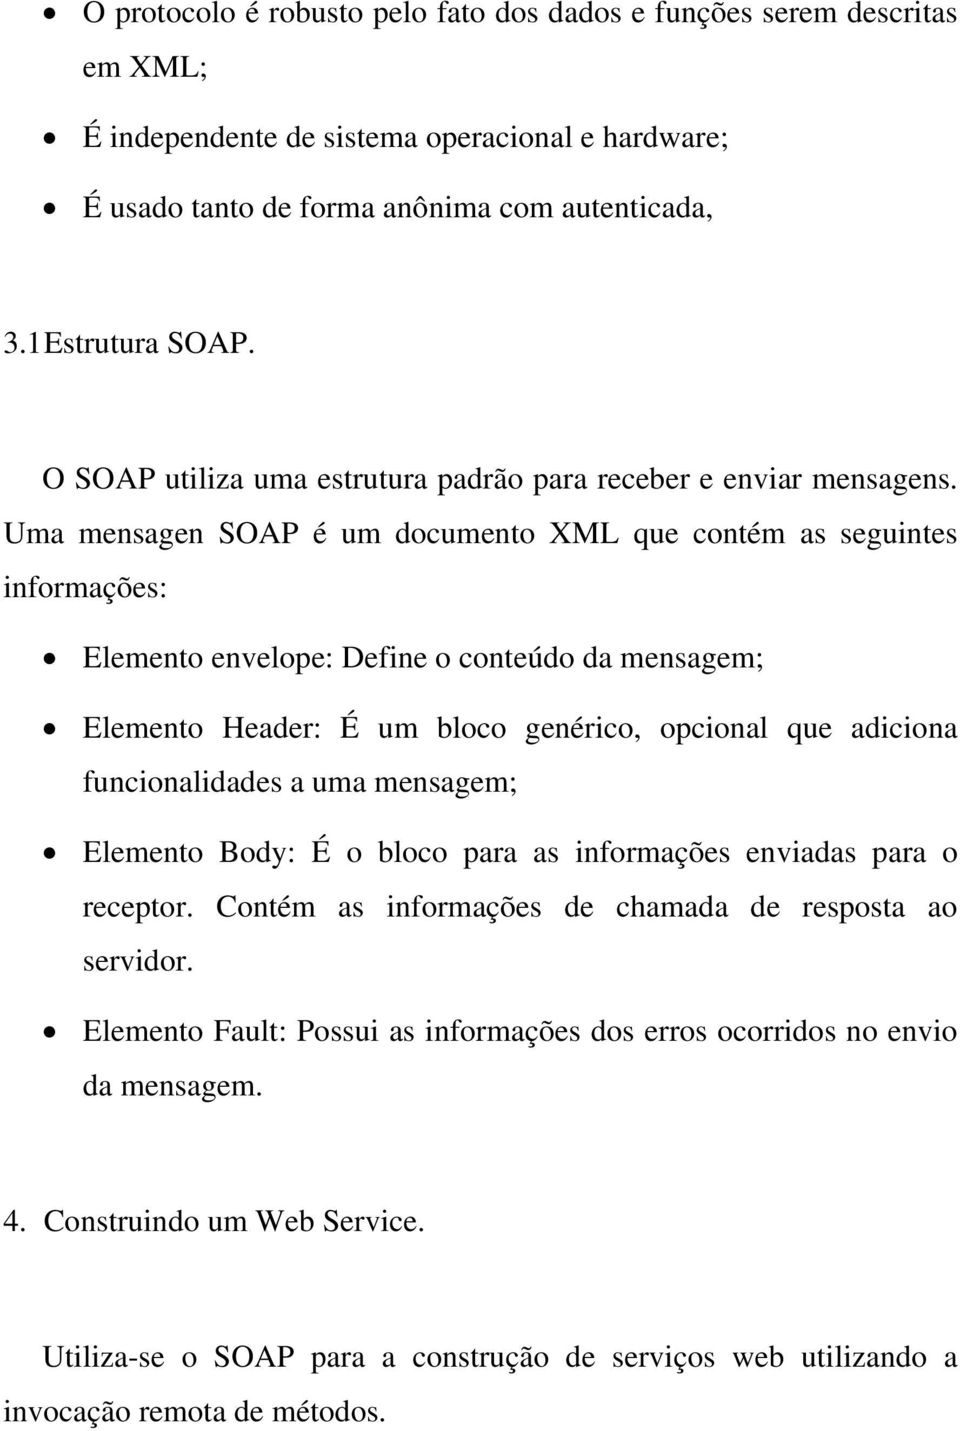 Uma mensagen SOAP é um documento XML que contém as seguintes informações: Elemento envelope: Define o conteúdo da mensagem; Elemento Header: É um bloco genérico, opcional que adiciona funcionalidades